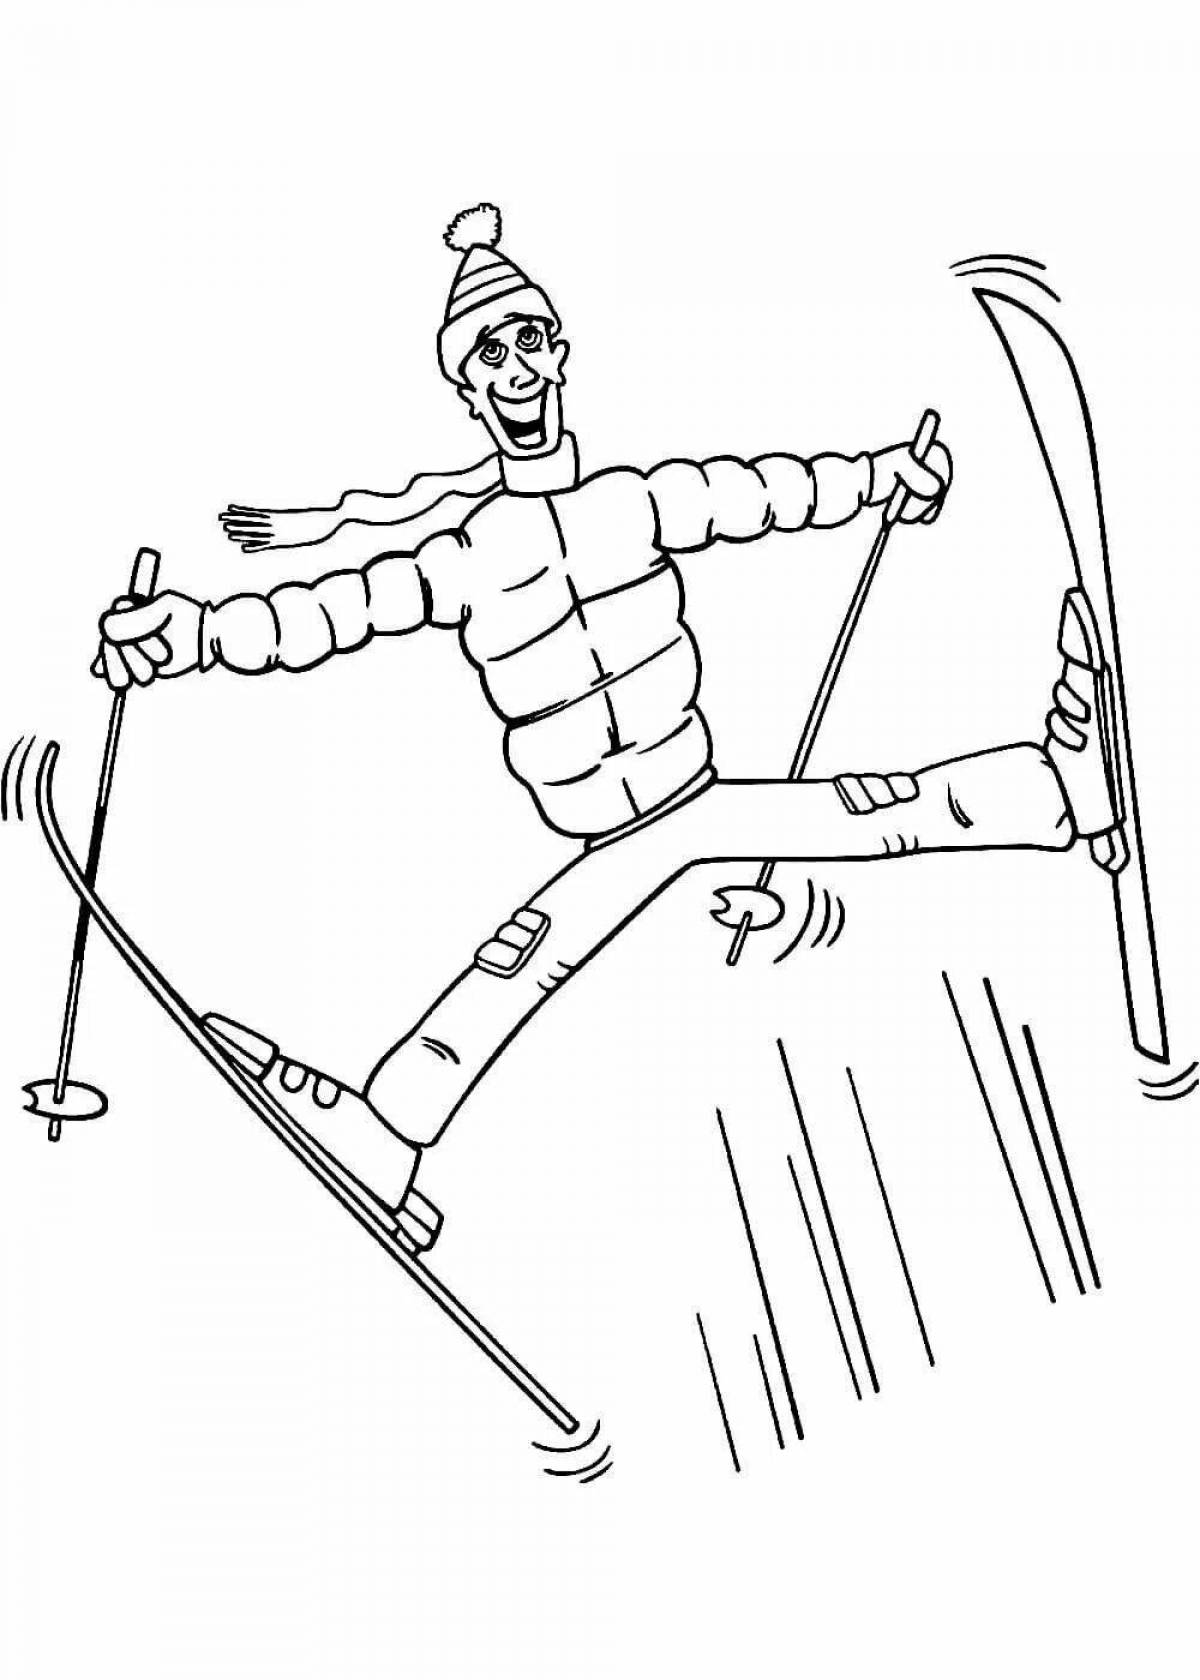 Toddler skier #6